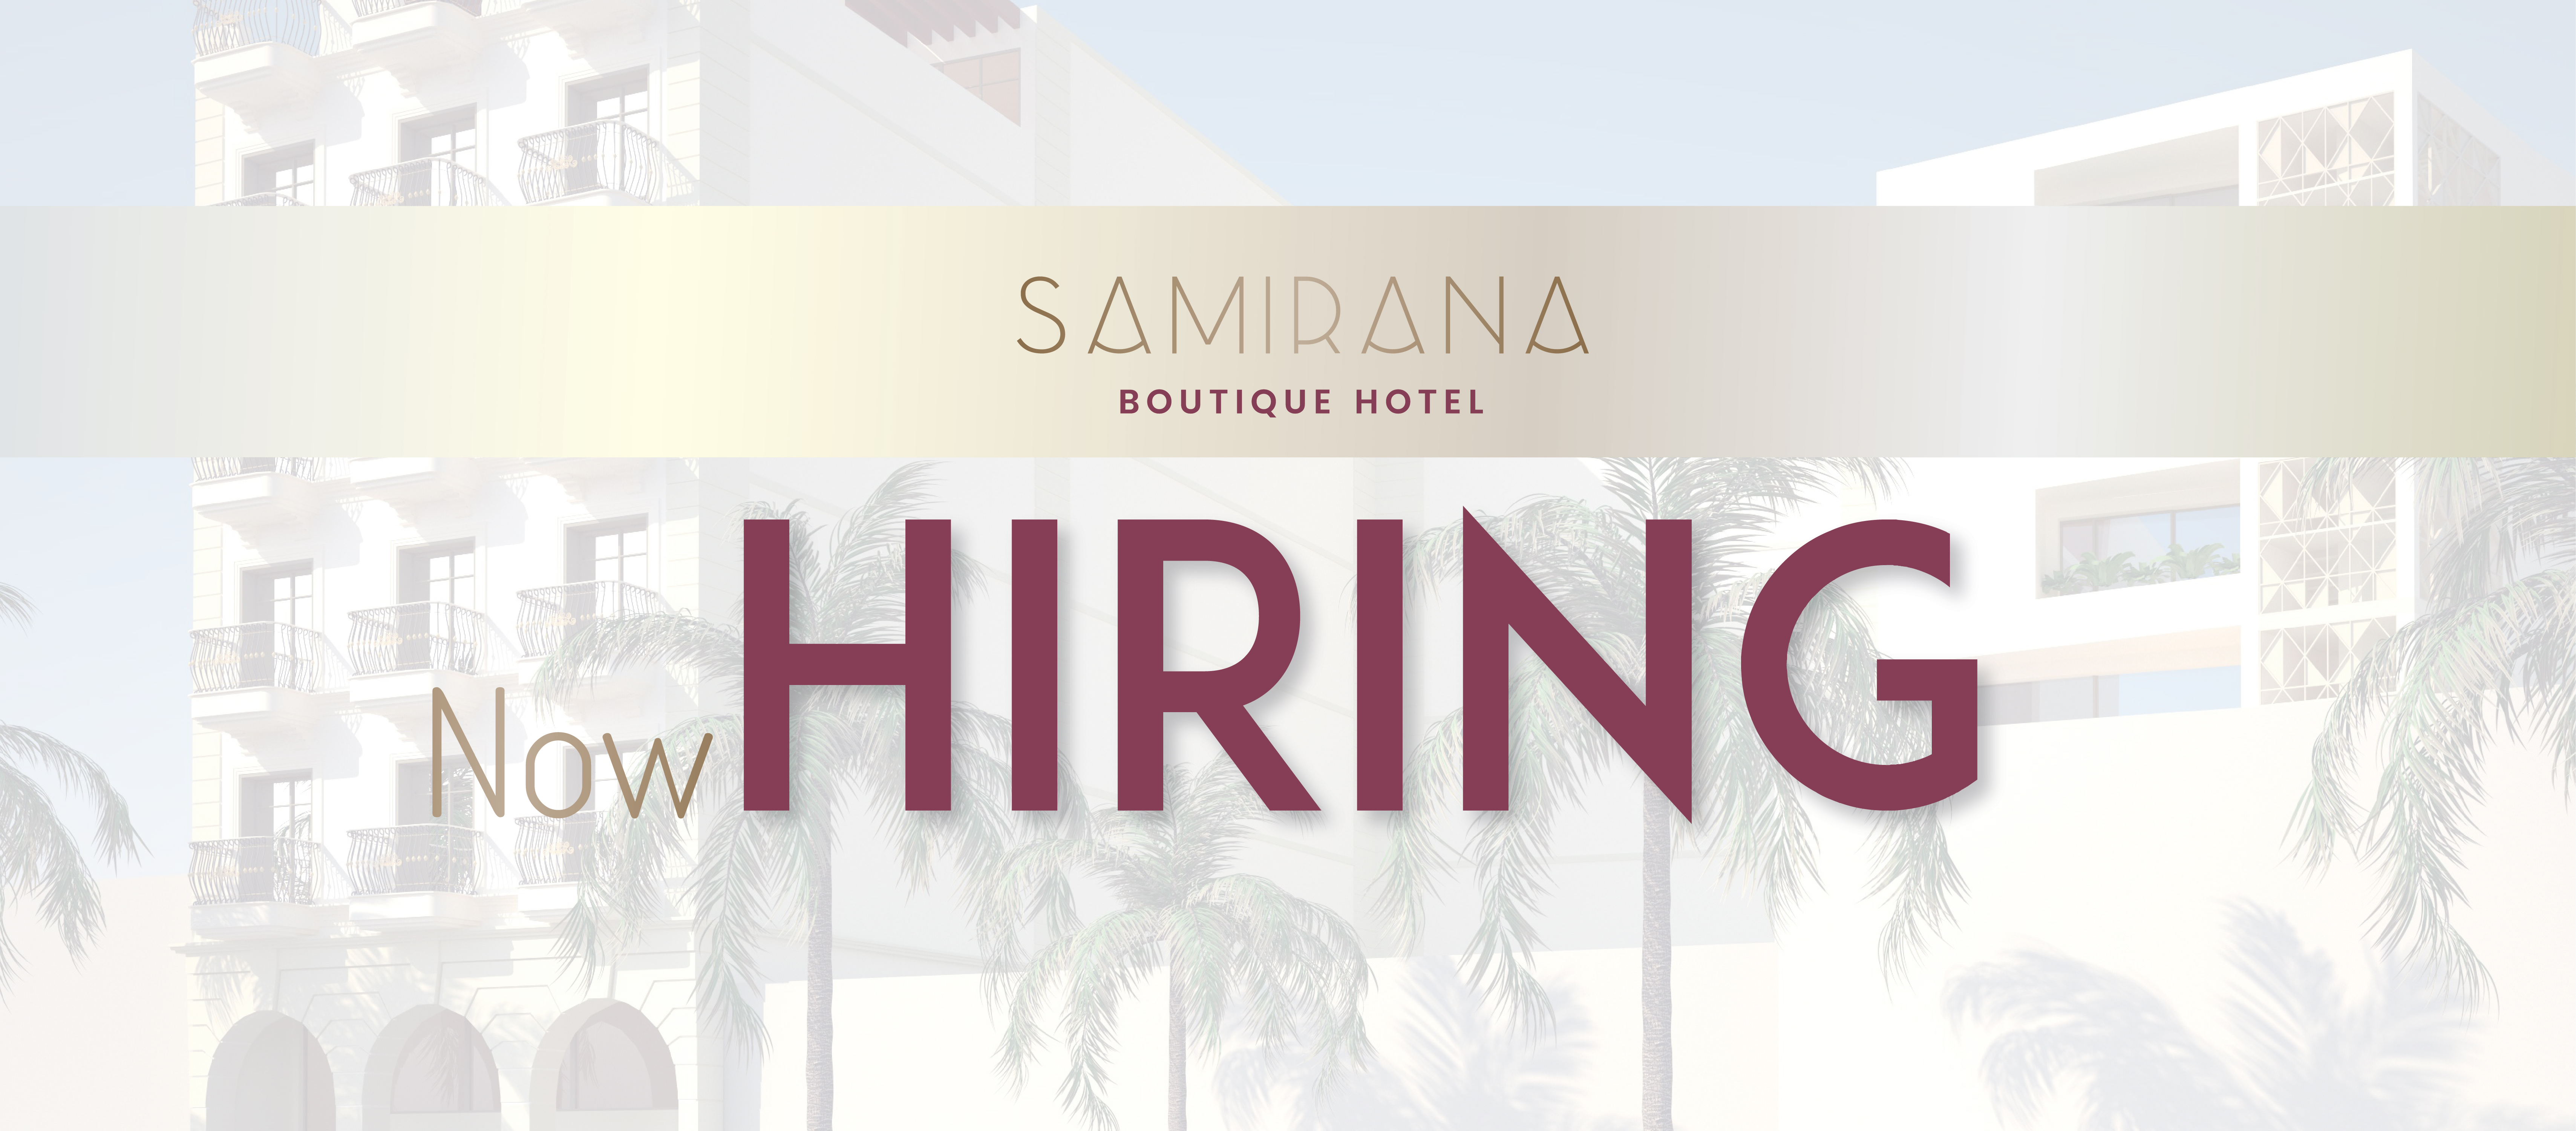 Το Samirana Boutique Hotel στην καρδιά του κέντρου της Λάρνακας Προσλαμβάνει Προσωπικό